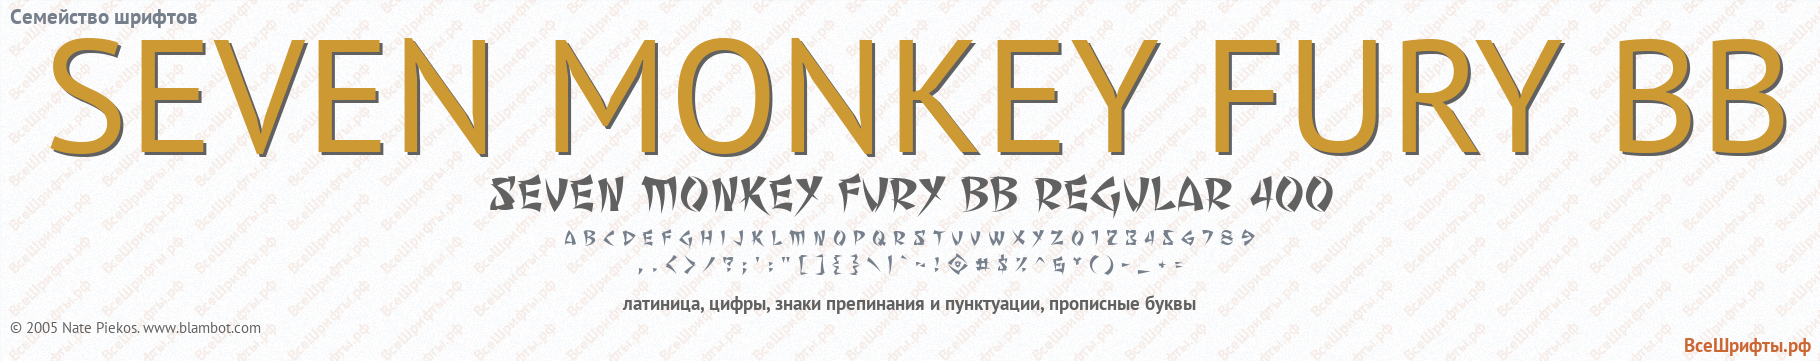 Семейство шрифтов SEVEN MONKEY FURY BB